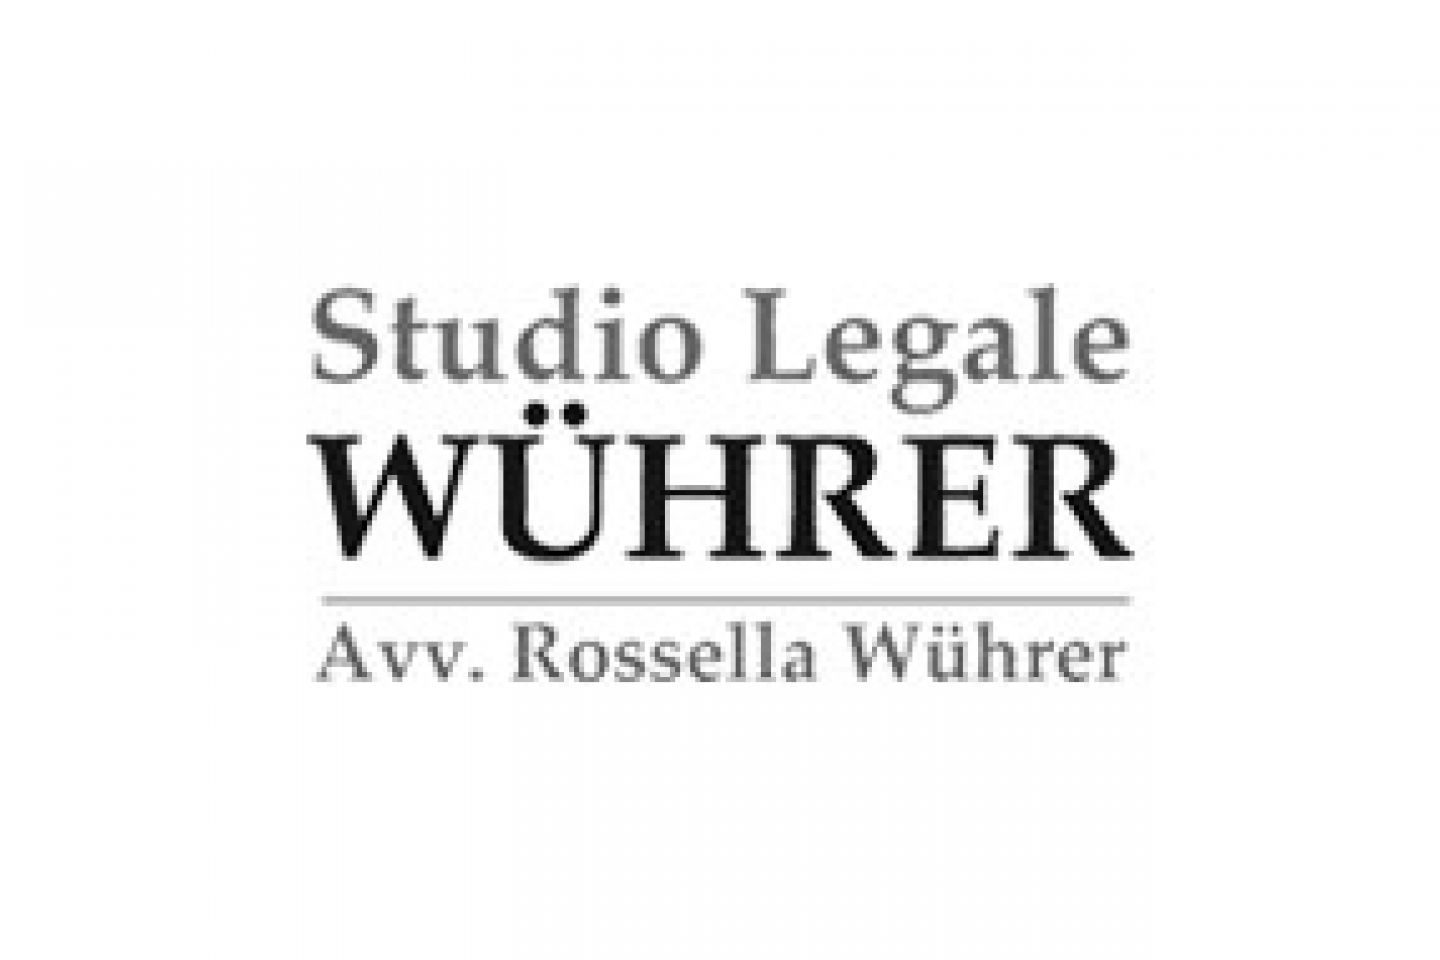 Studio Legale Wuhrer cliente OZOTO web agency Brescia